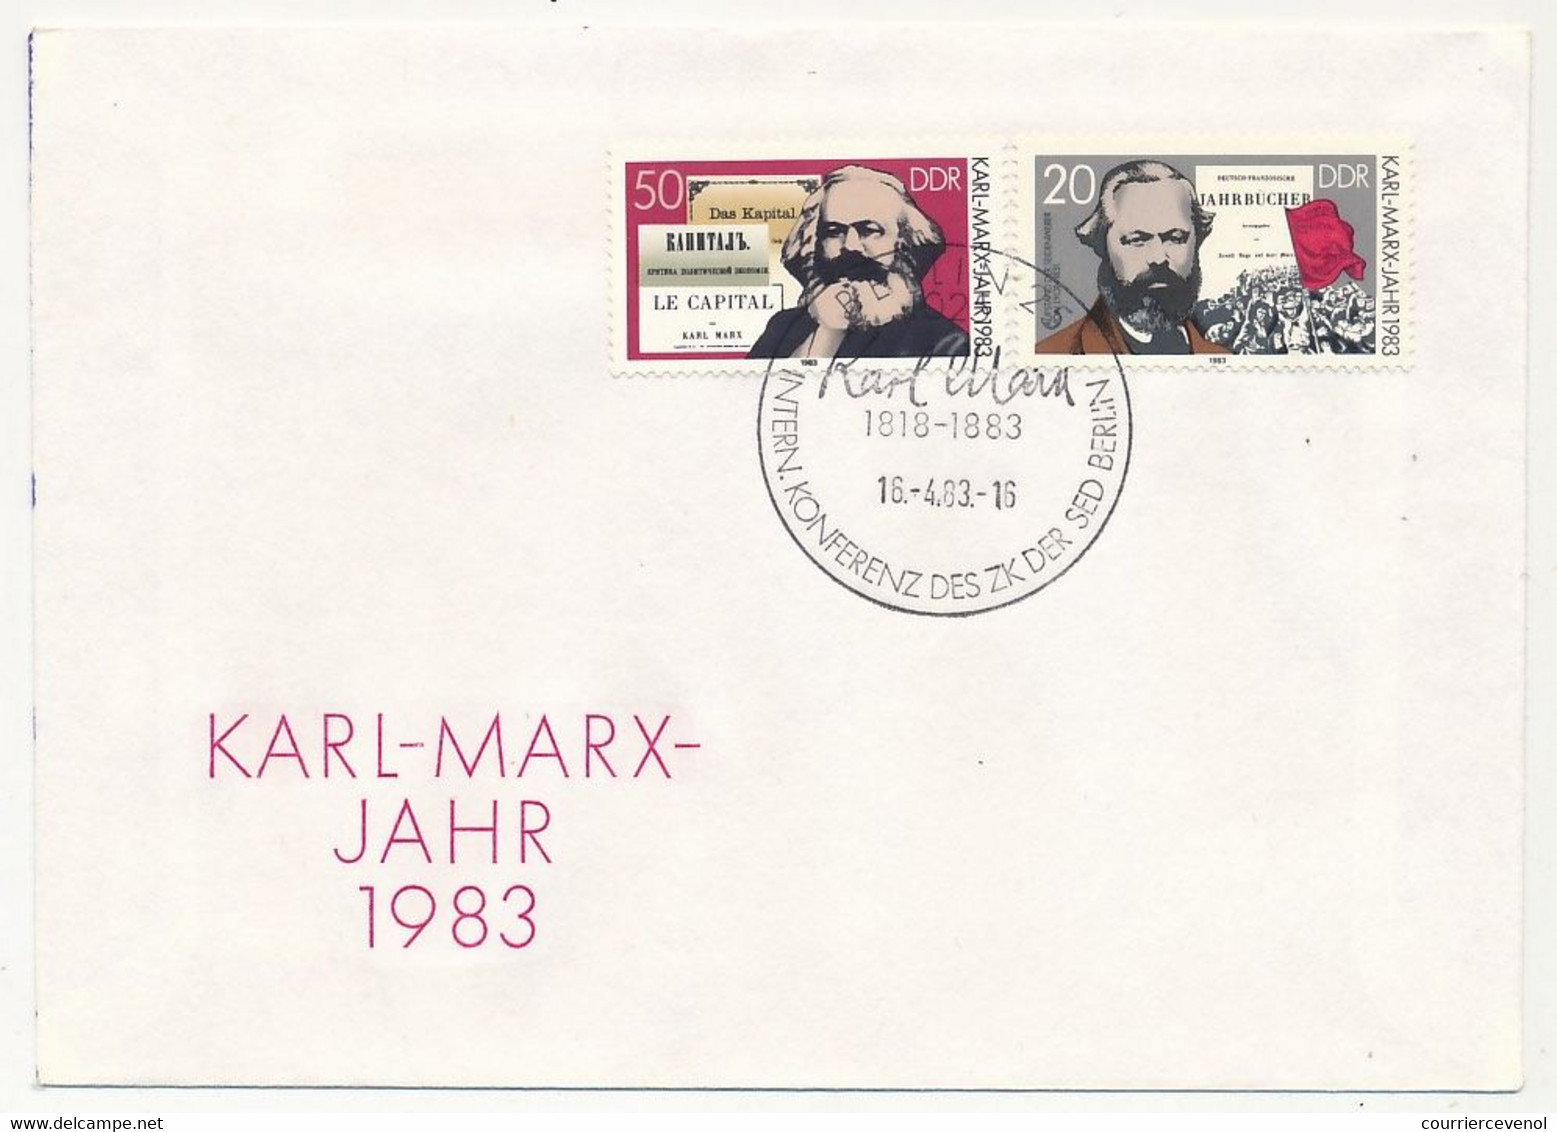 ALLEMAGNE DDR - 11 enveloppes Karl-Marx Jahr 1983 + 1 Soda Stassfurt Karl Marx - Oblit. diverses